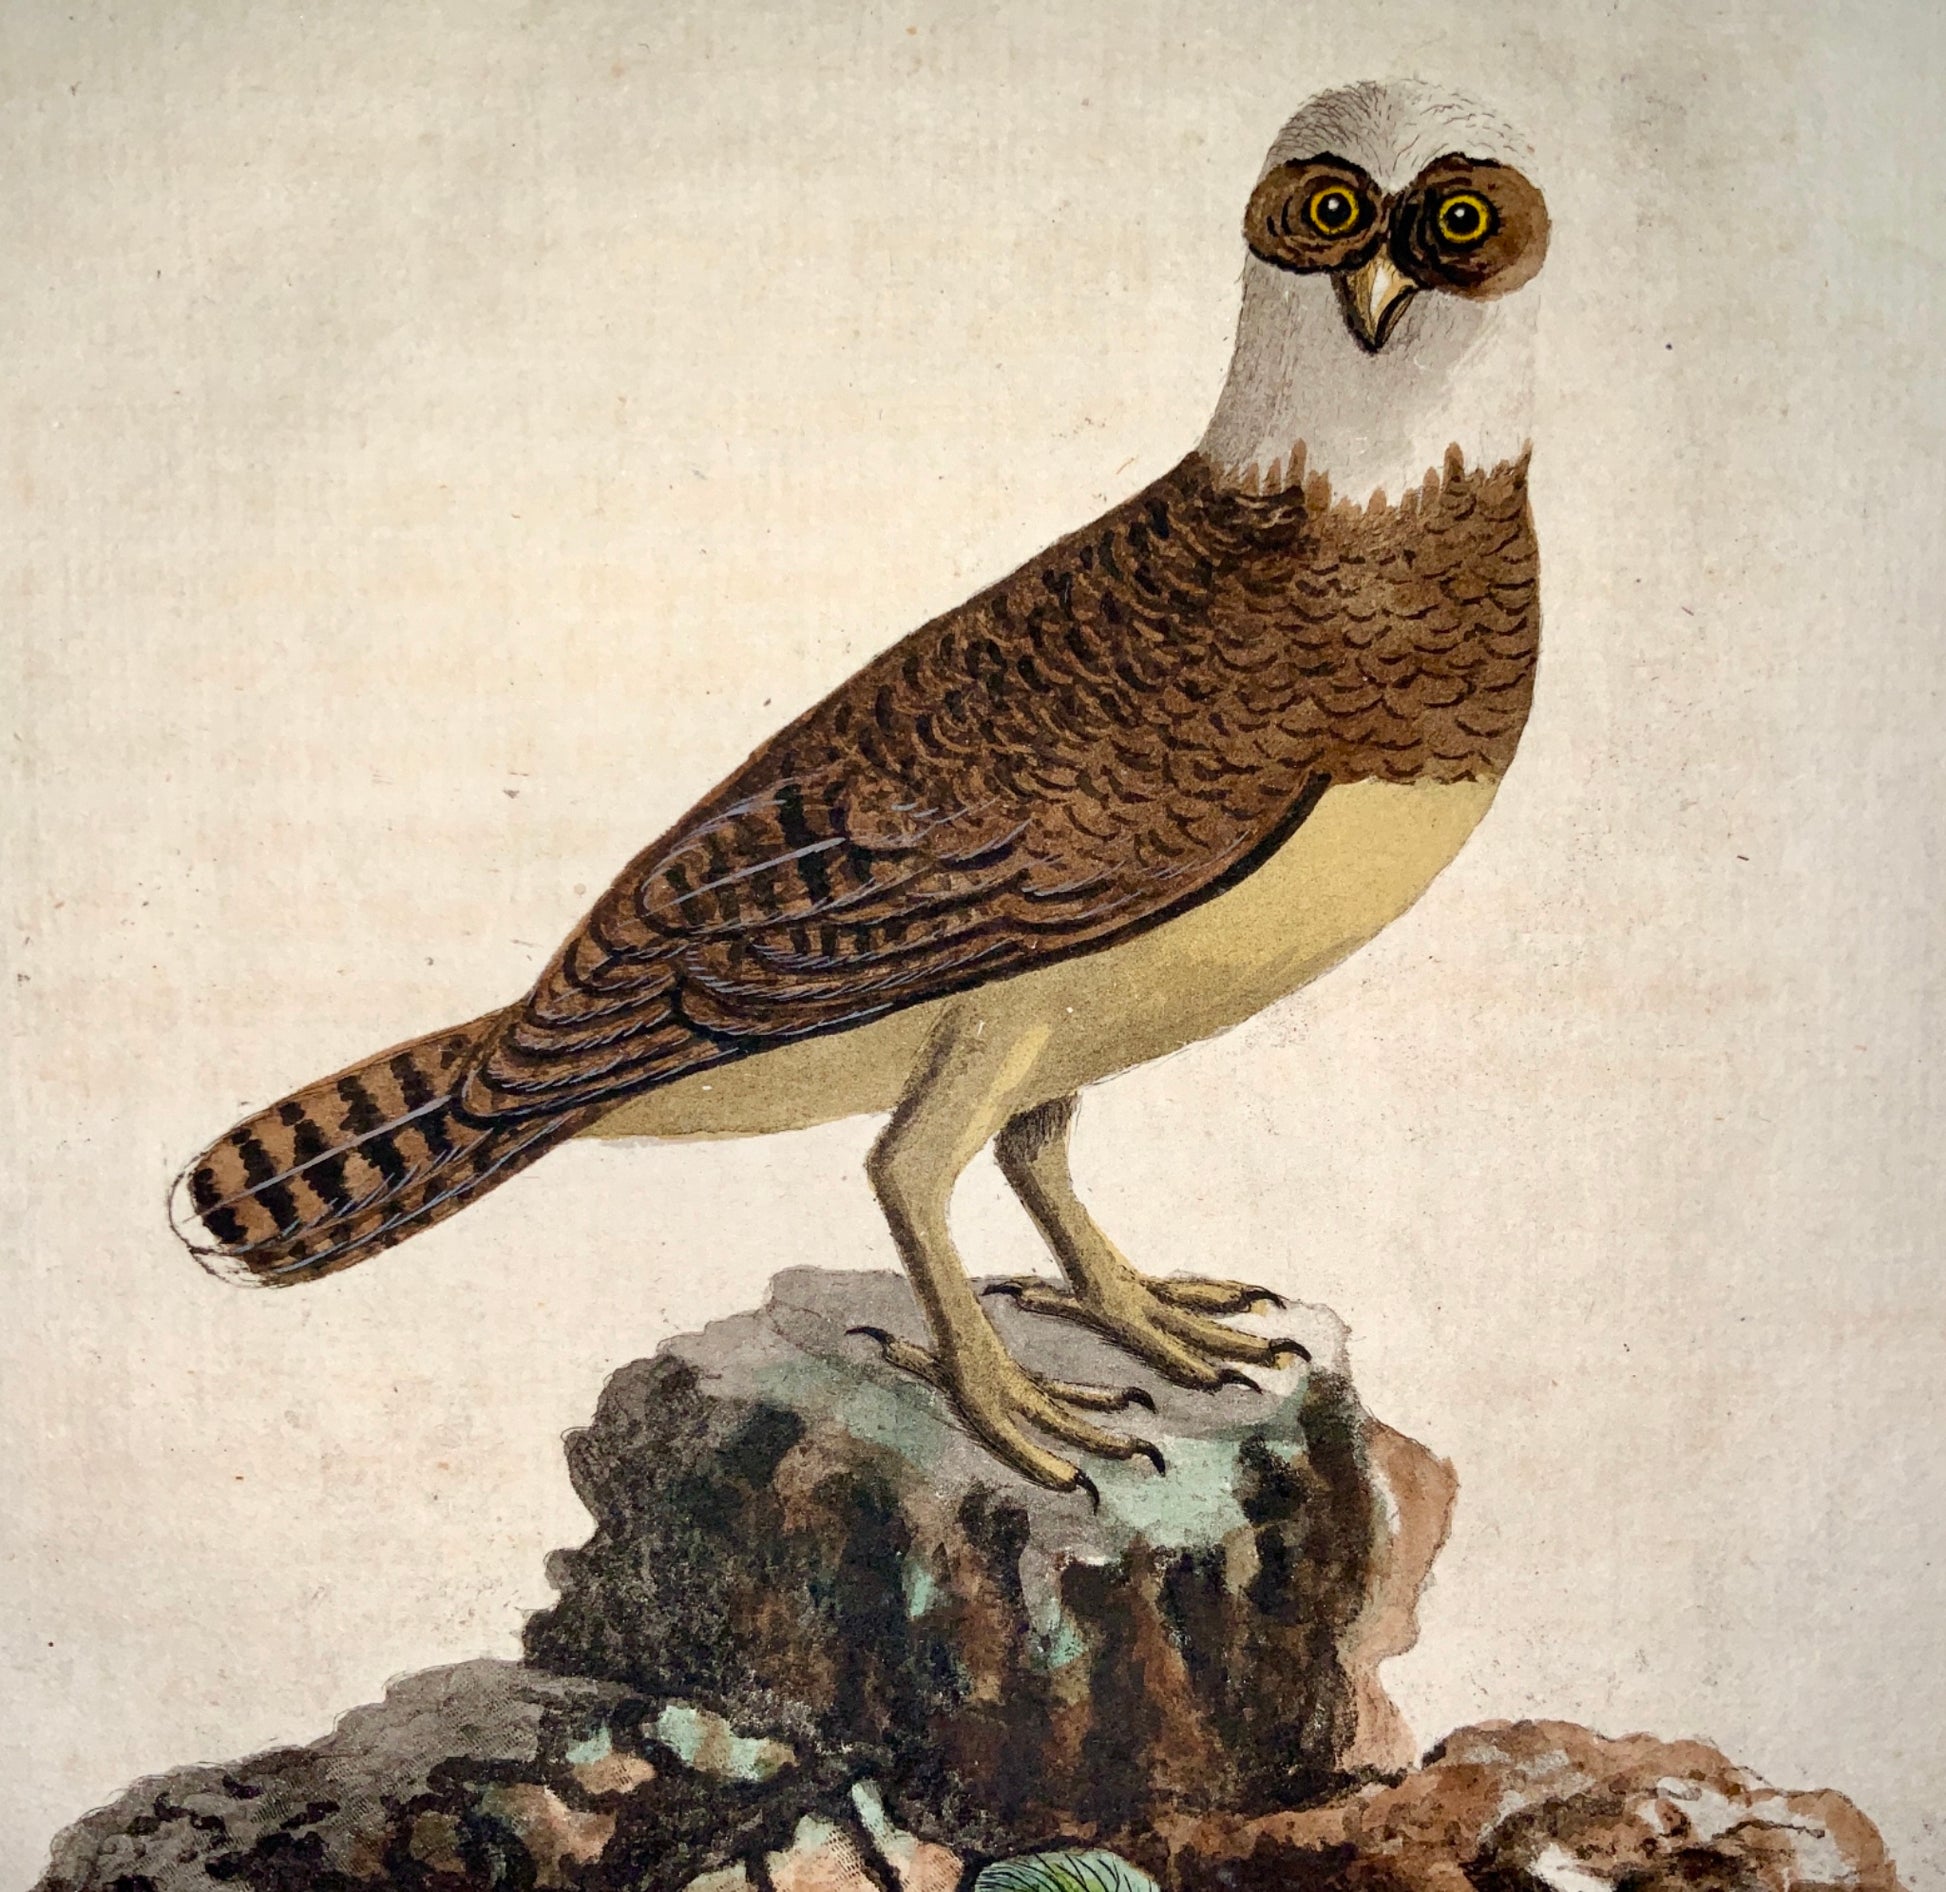 1785 John Latham - Synopsis - SPECTACLE OWL Ornithology - hand coloured